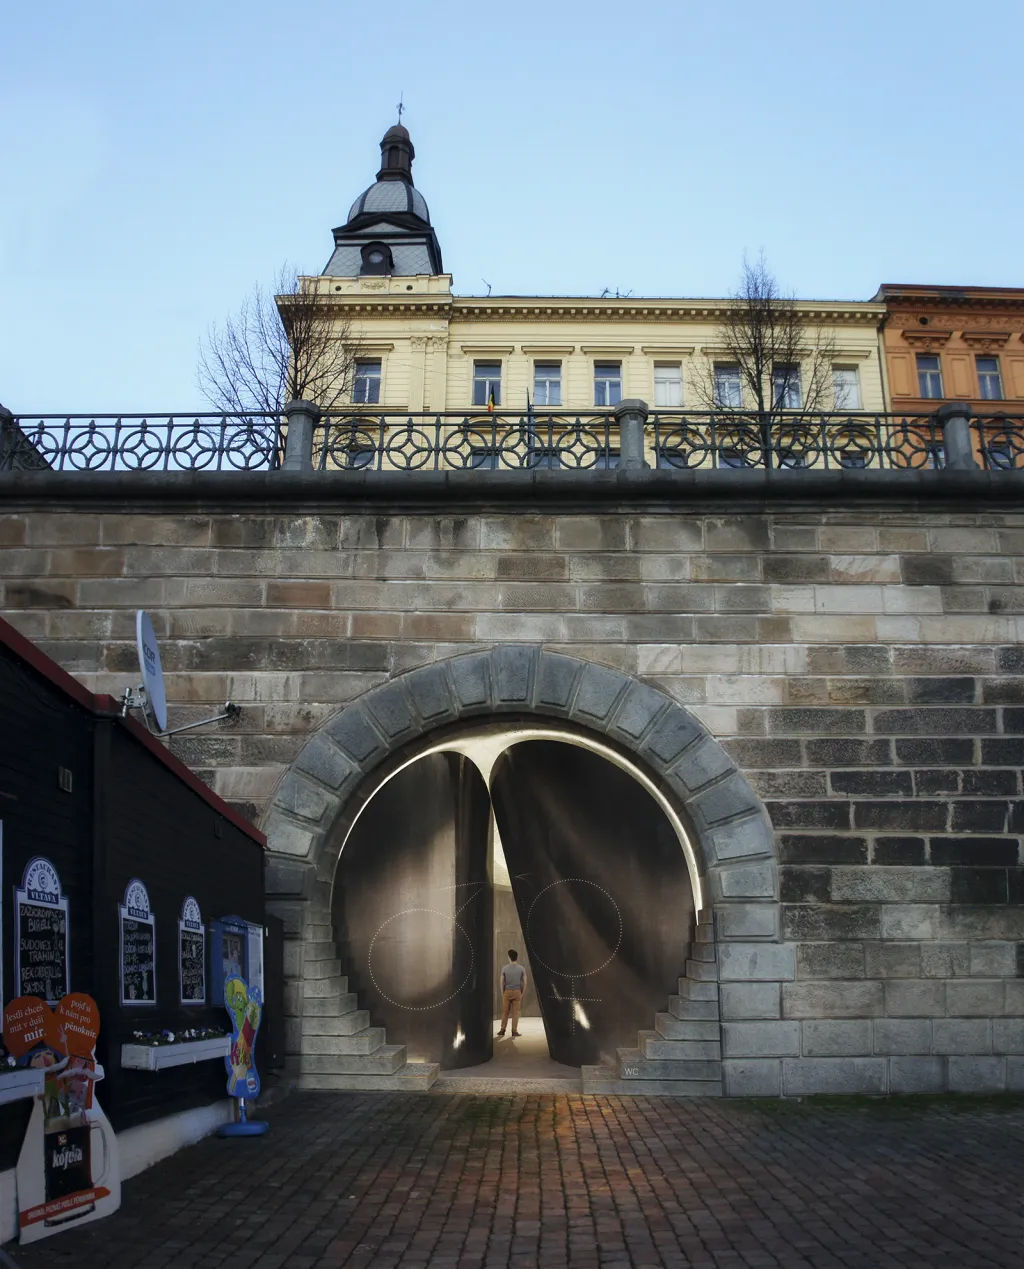 Takto by například vypadal vchod do veřejného WC v blízkosti restaurace Vltava, která může v současnosti svými toaletami obsloužit pouze hosty.